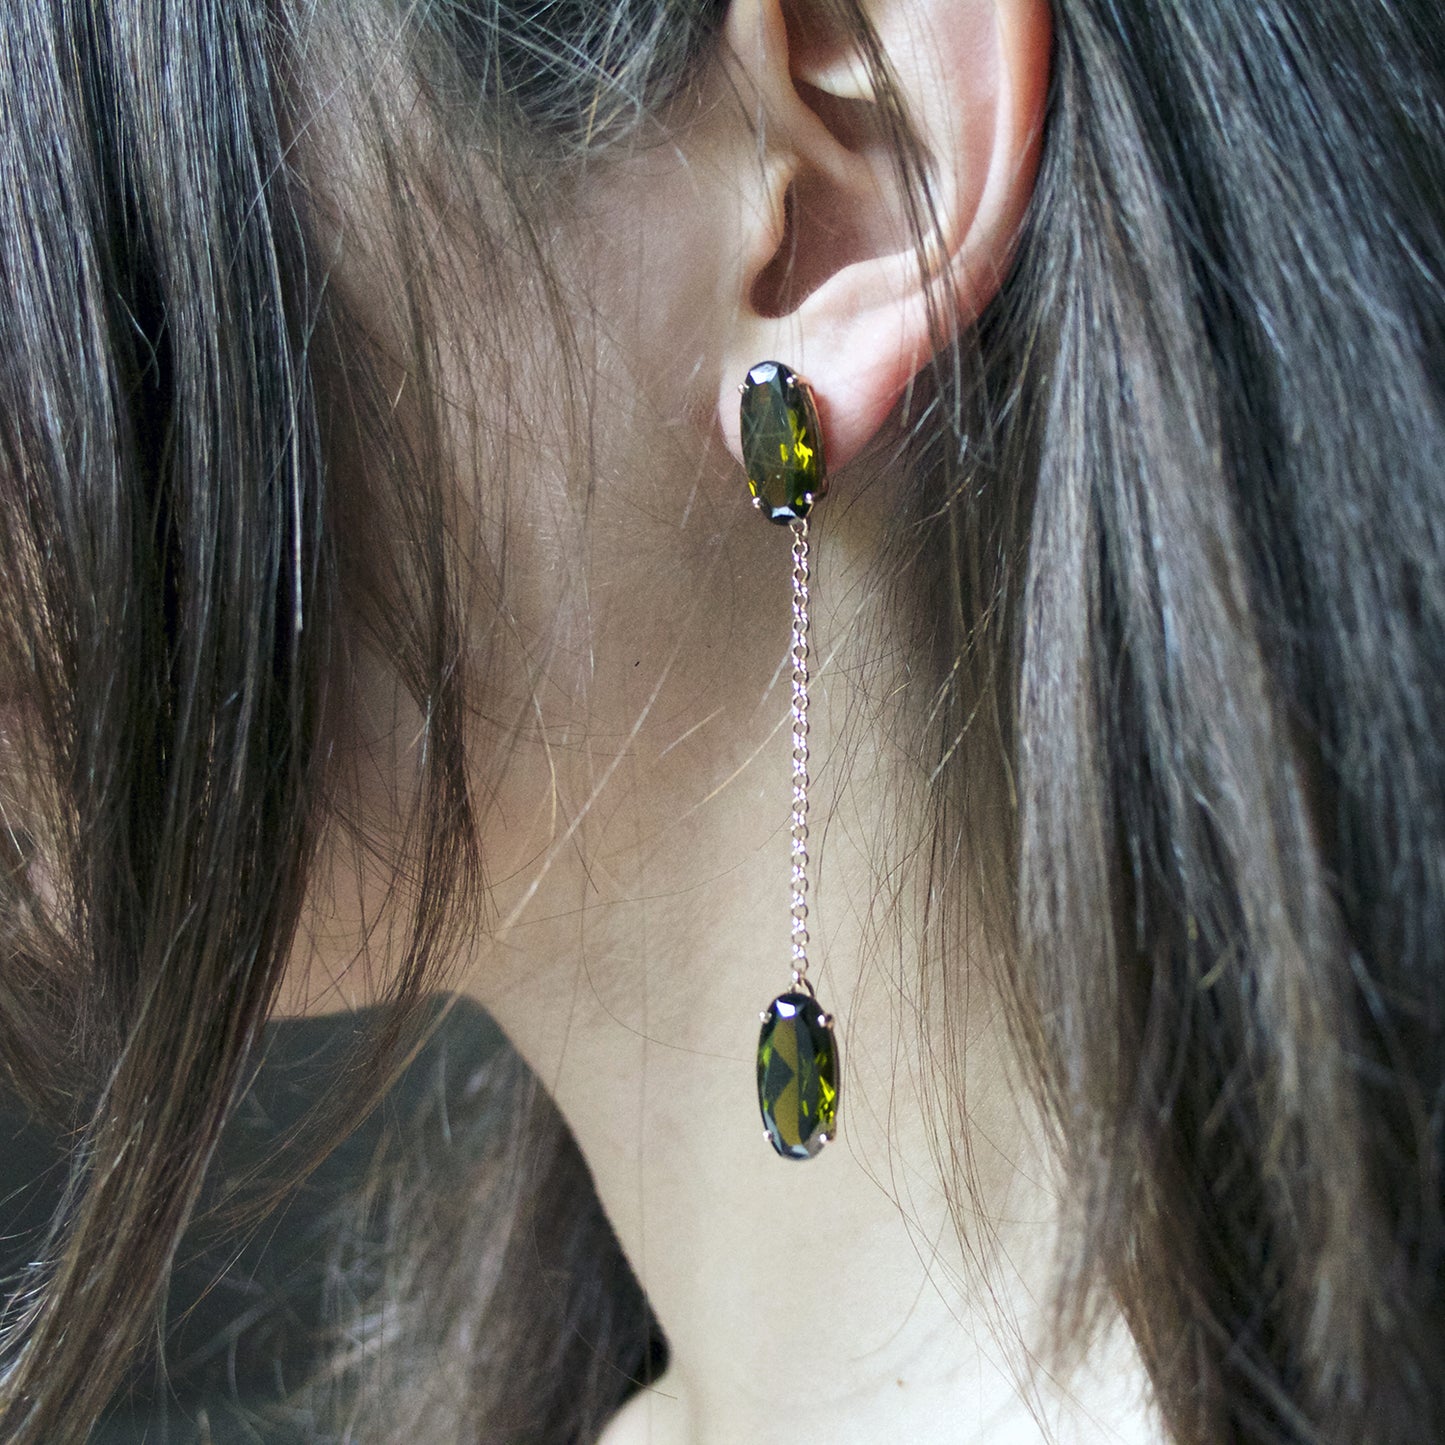 Drop earrings with green zircons